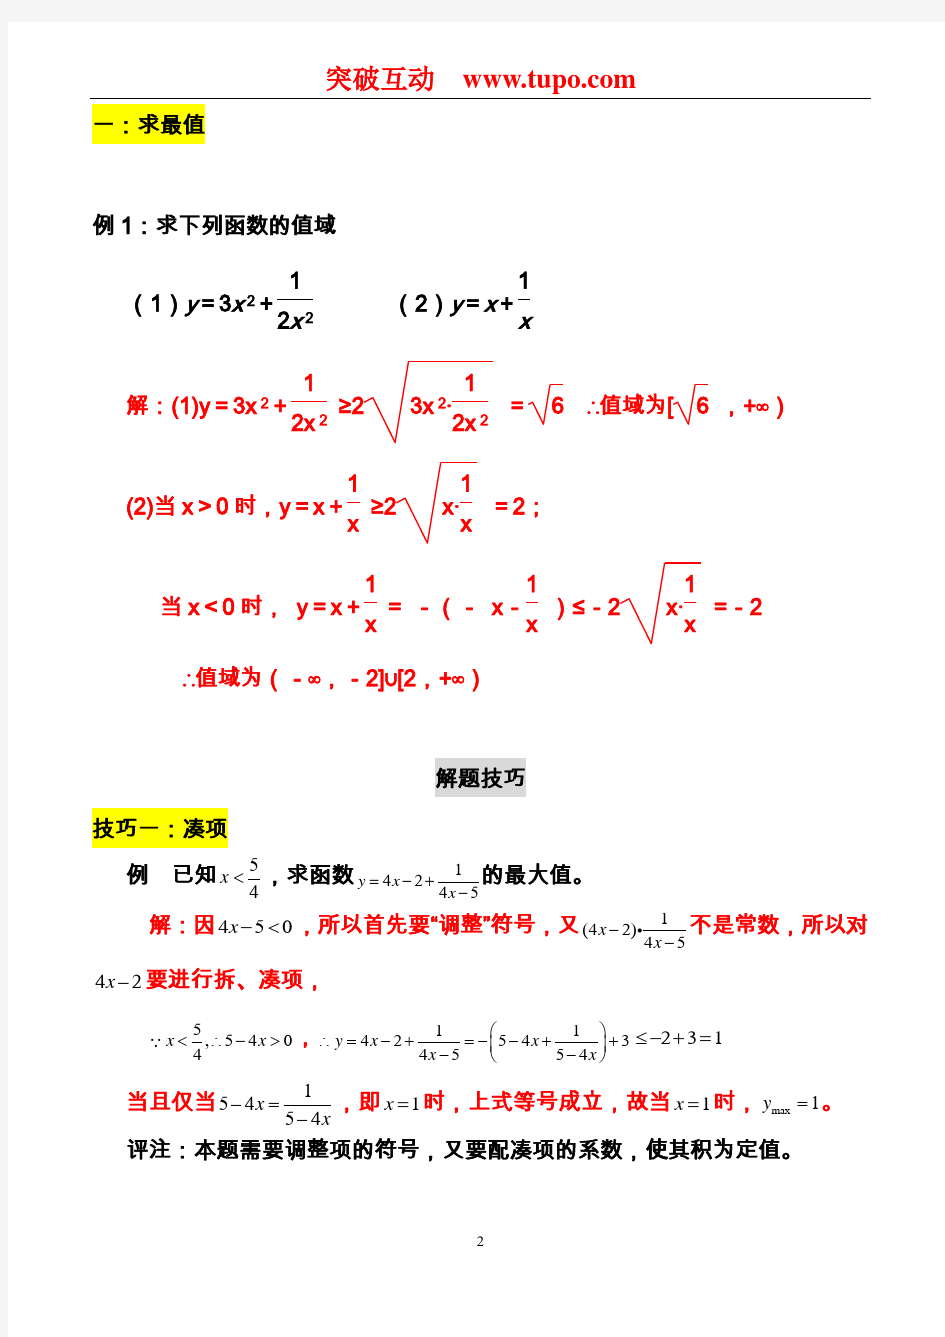 【高中数学】公式总结(均值不等式)